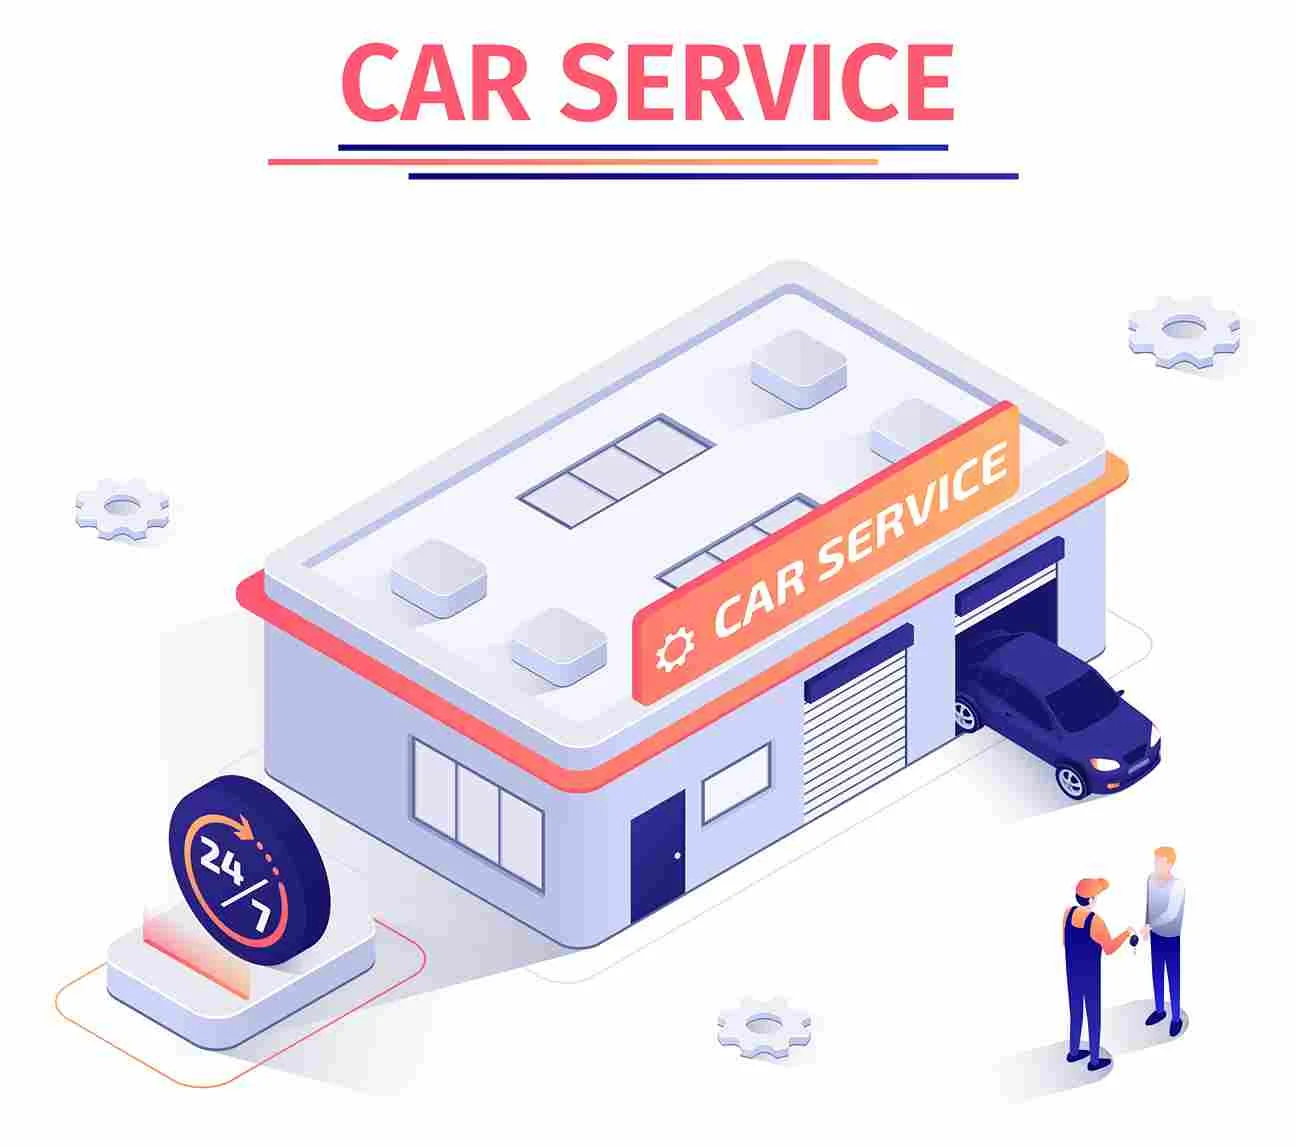 Car Service Center in Gurgaon